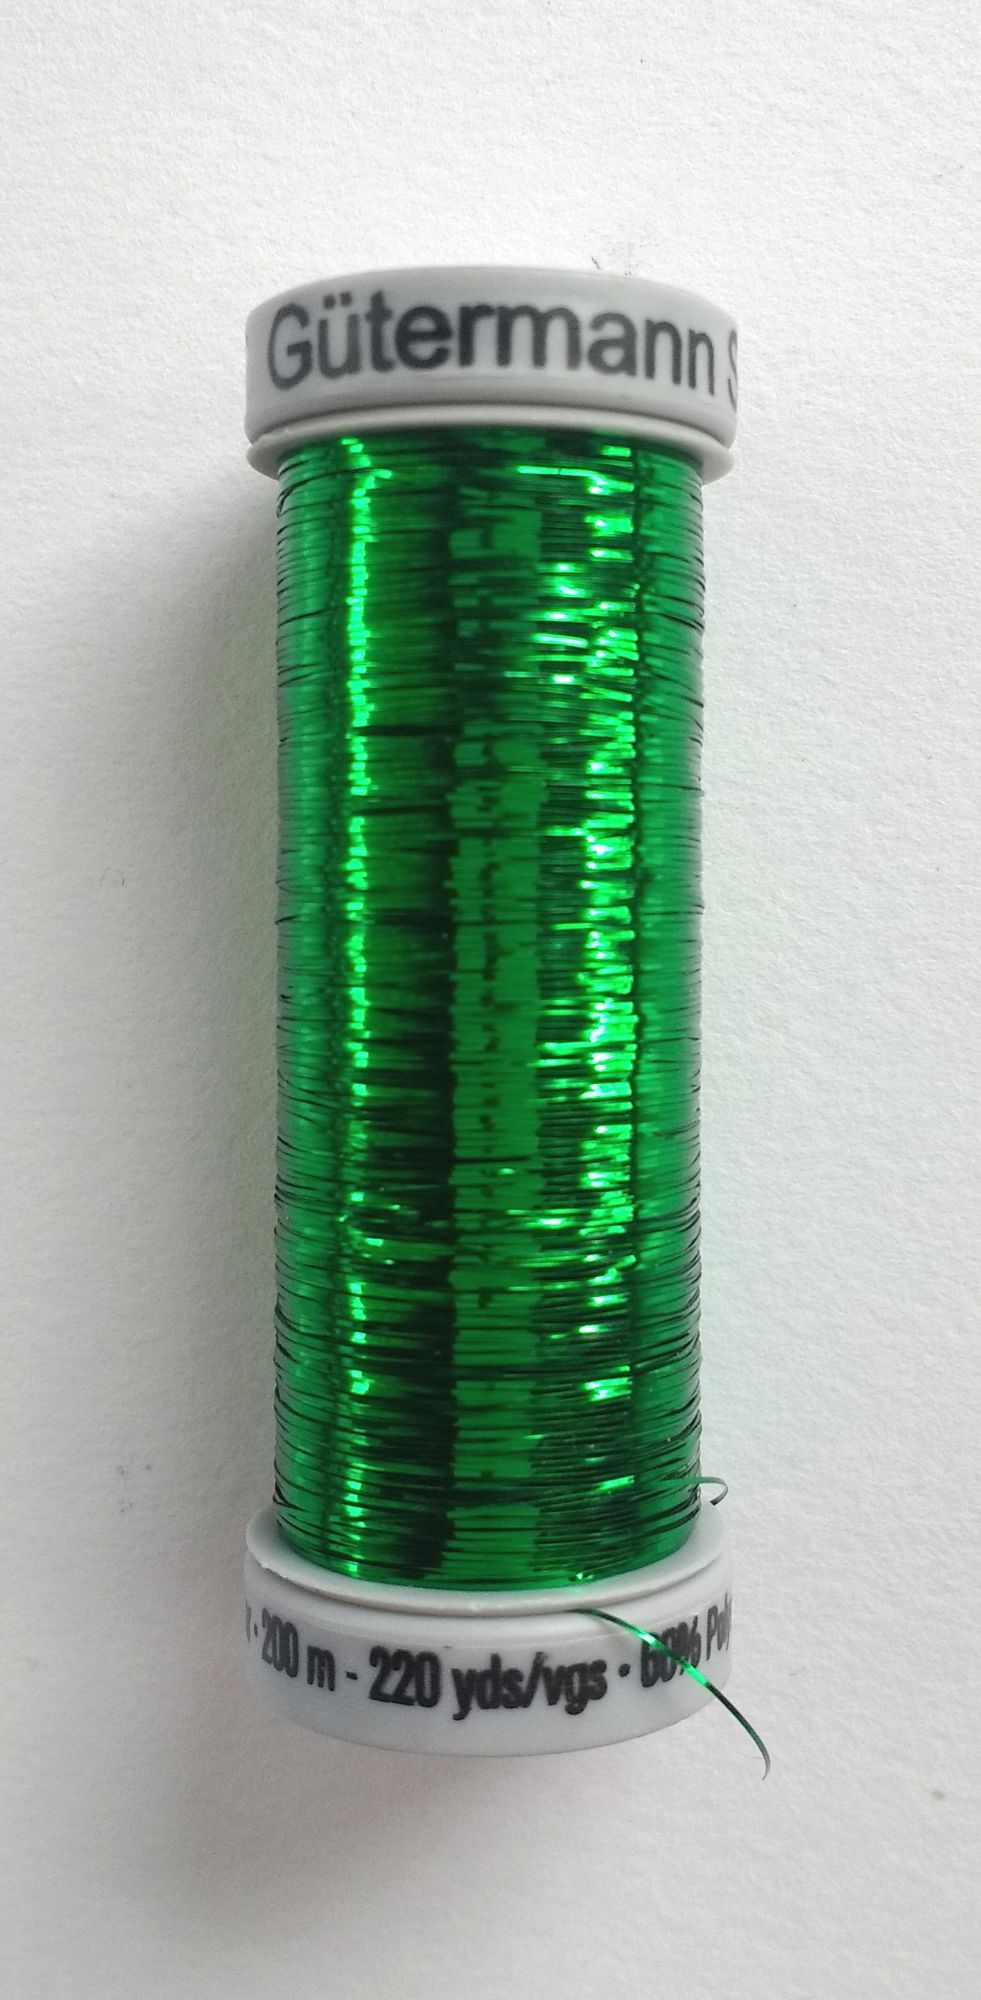 Metallic Thread Gutermann Sliver Machine Embroidery thread 8019 Light Green